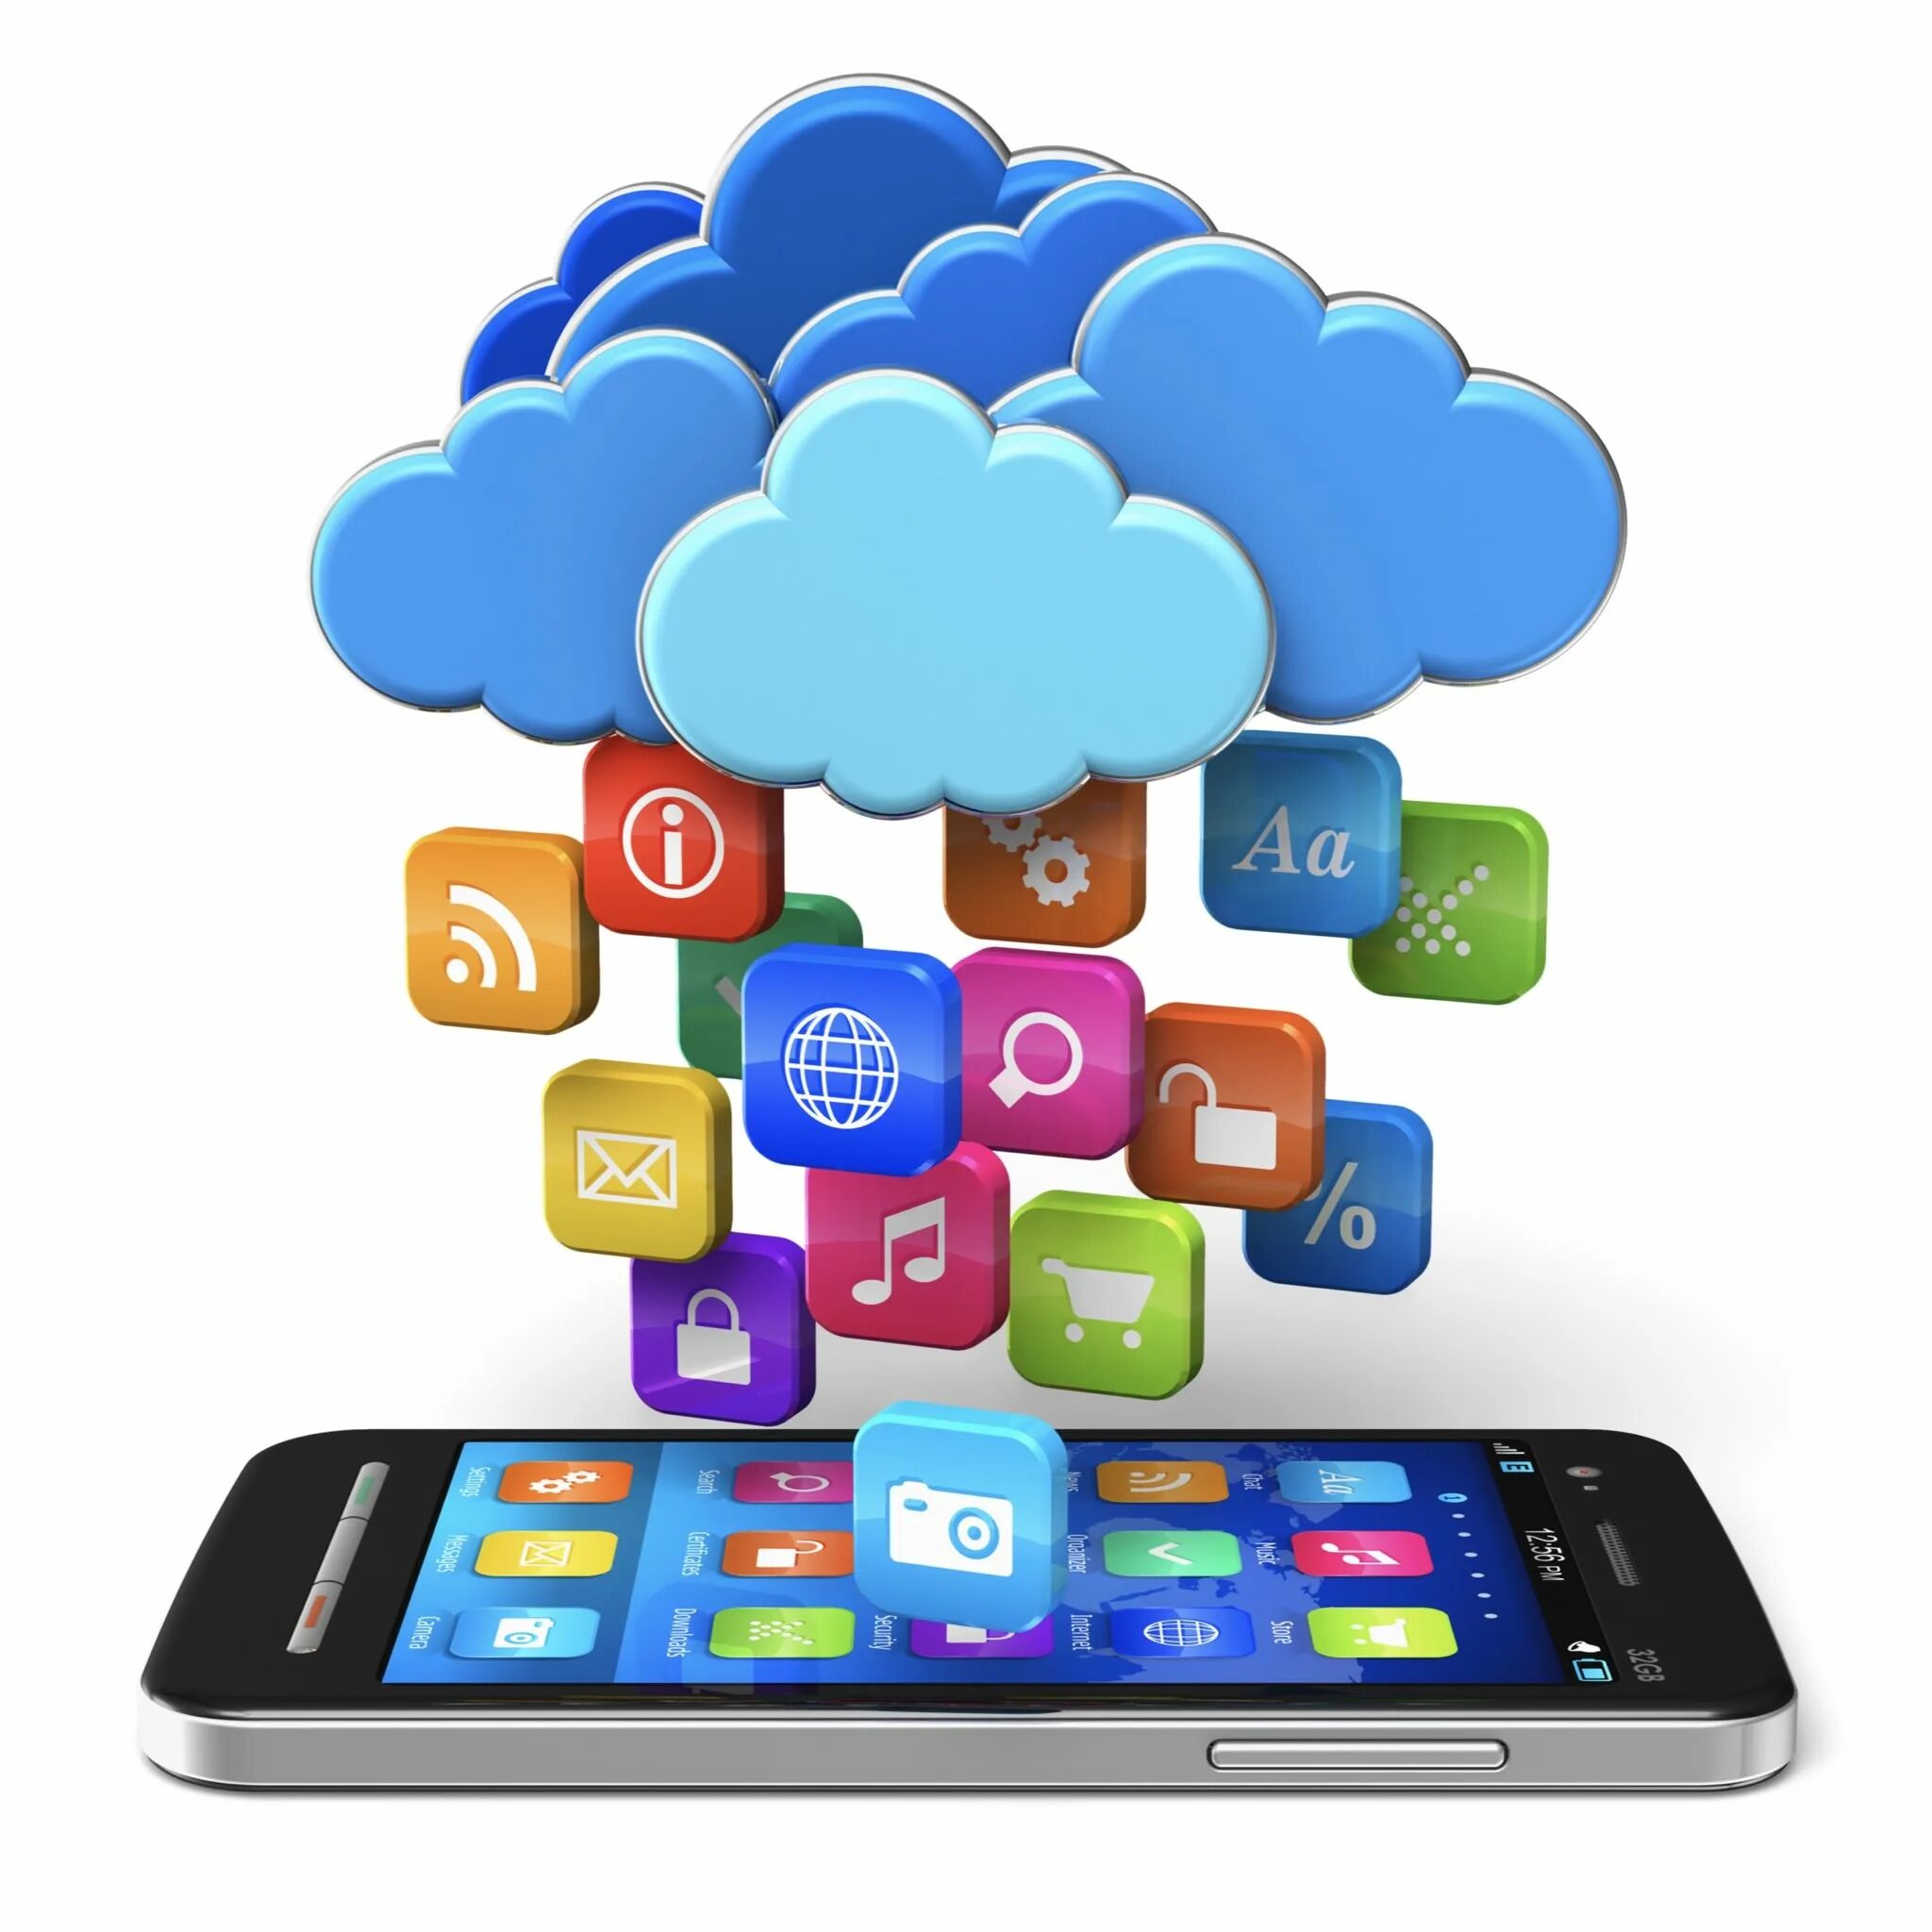 Cloud applications. Облачные вычисления. Мобильные и облачные технологии. Облачные сервисы. Облачные сервисы и мобильные технологии.